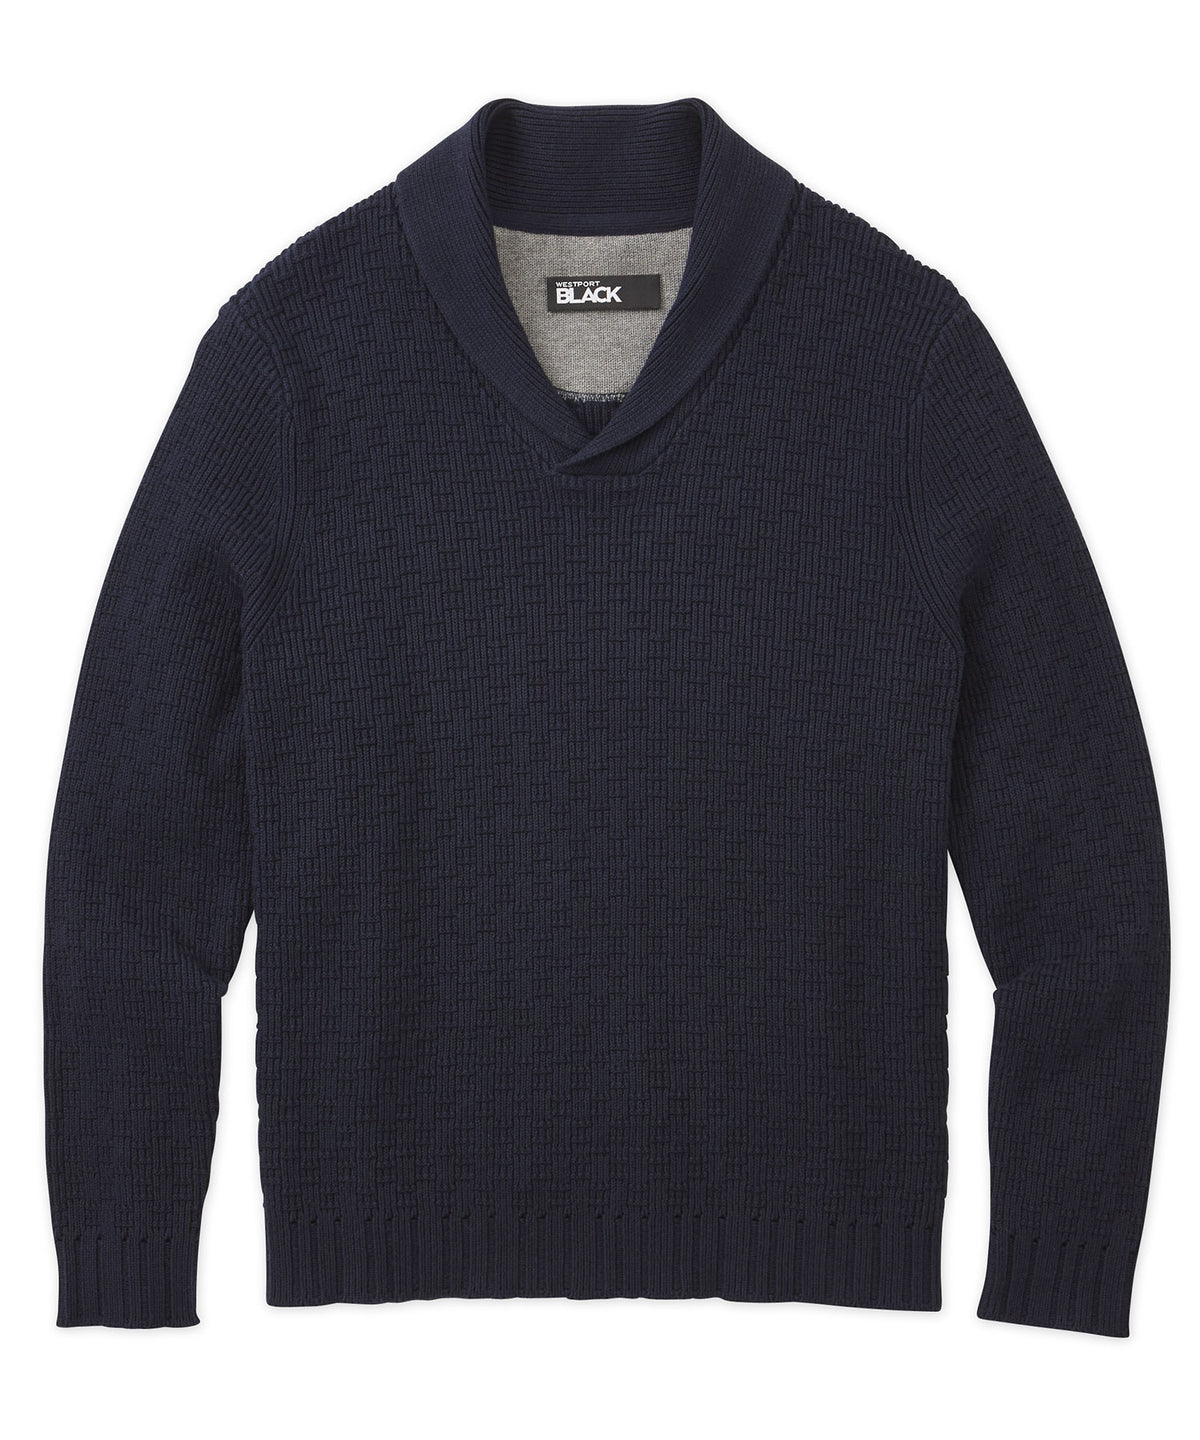 Westport Black Shawl Collar Sweater, Men's Big & Tall